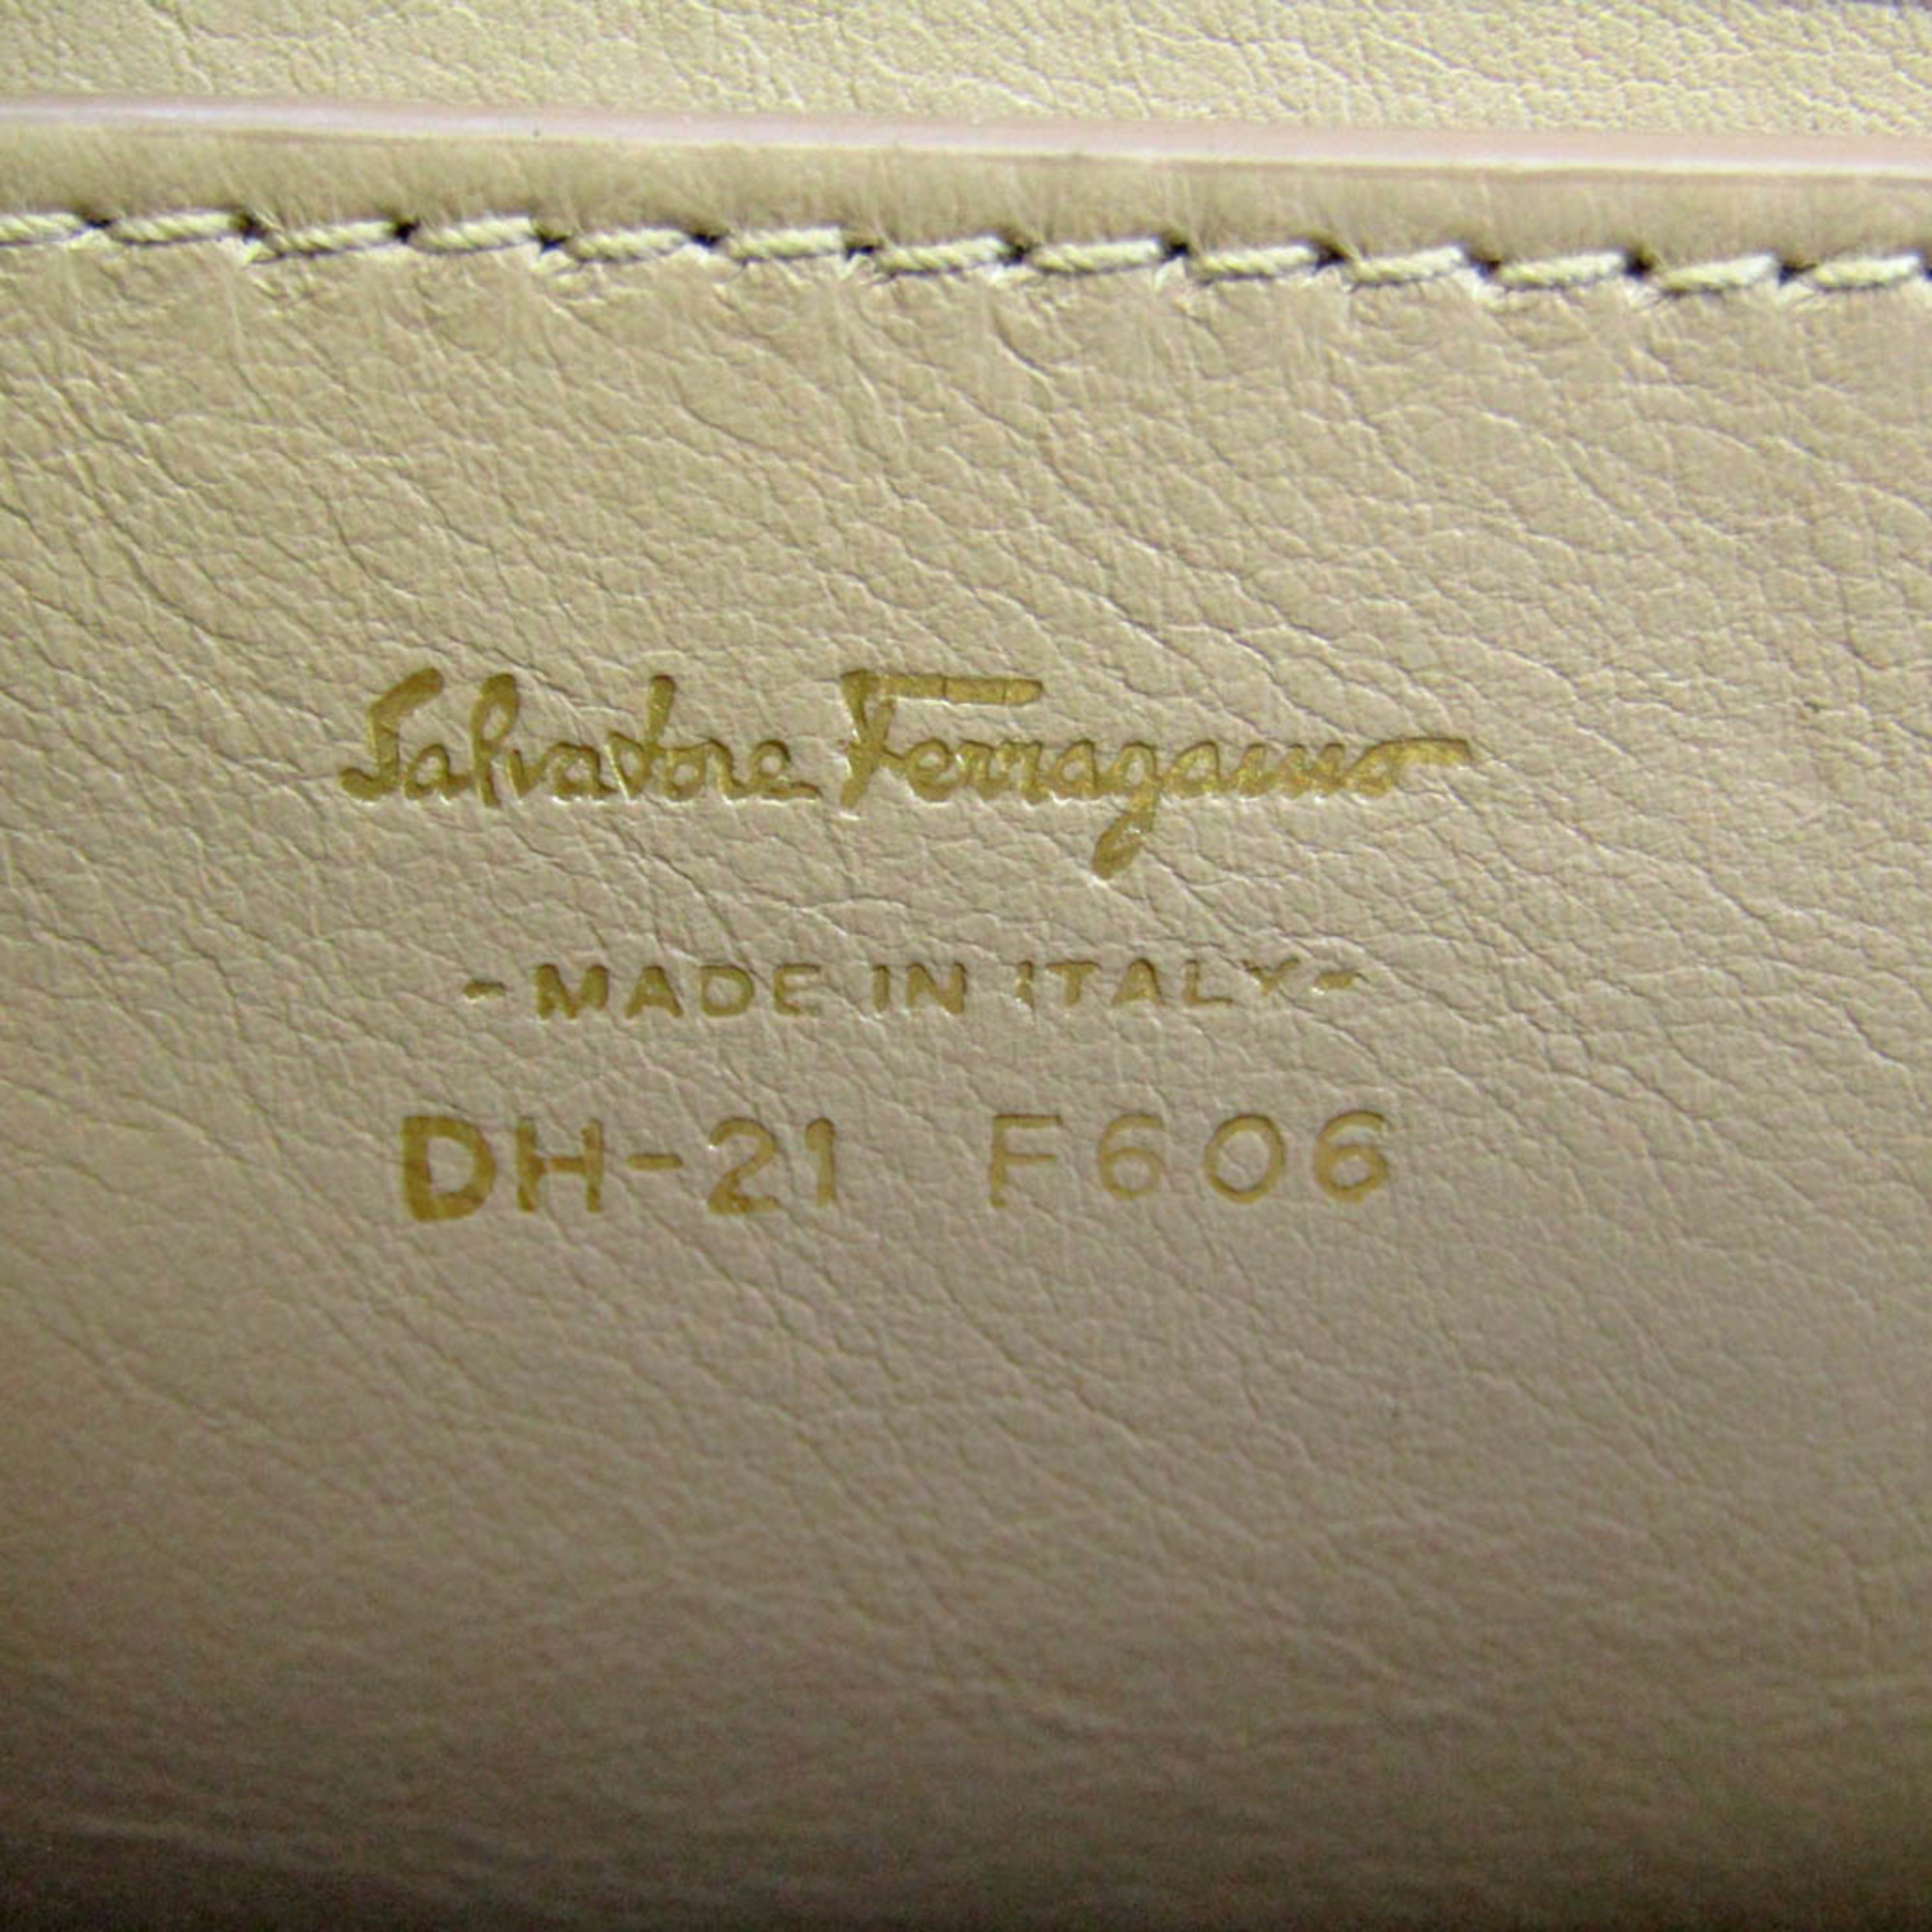 サルヴァトーレ・フェラガモ(Salvatore Ferragamo) ソフィア DH-21 F606 レディース レザー ハンドバッグ,ショルダーバッグ ココア